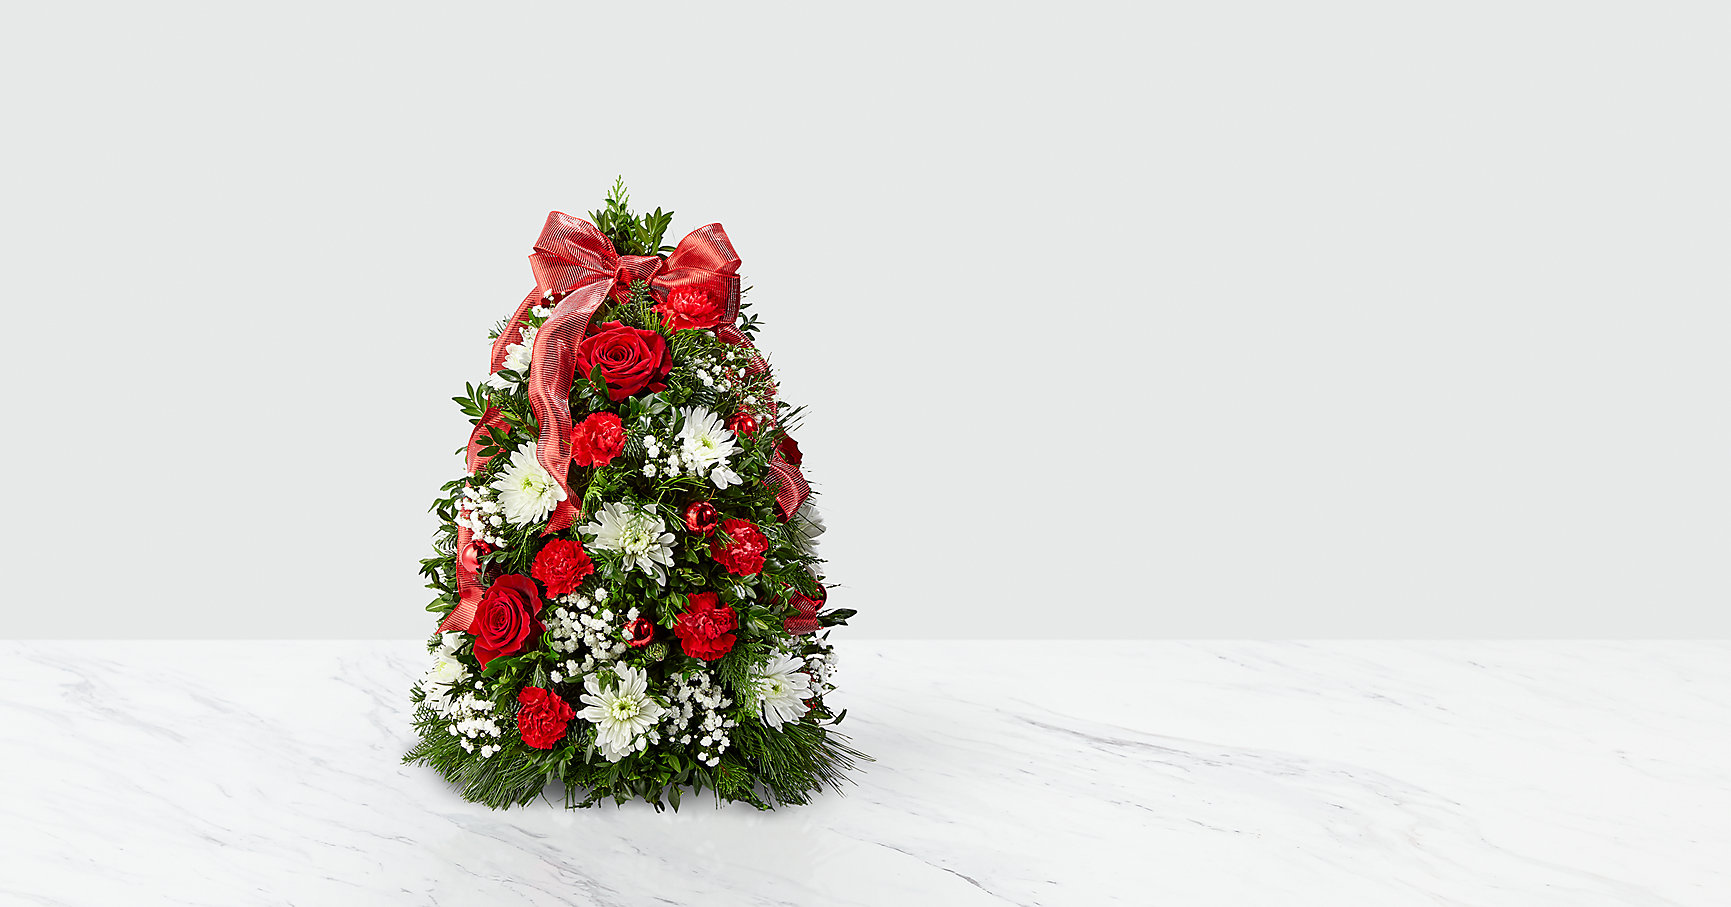 Make it Merry™ Tree Flower Bouquet